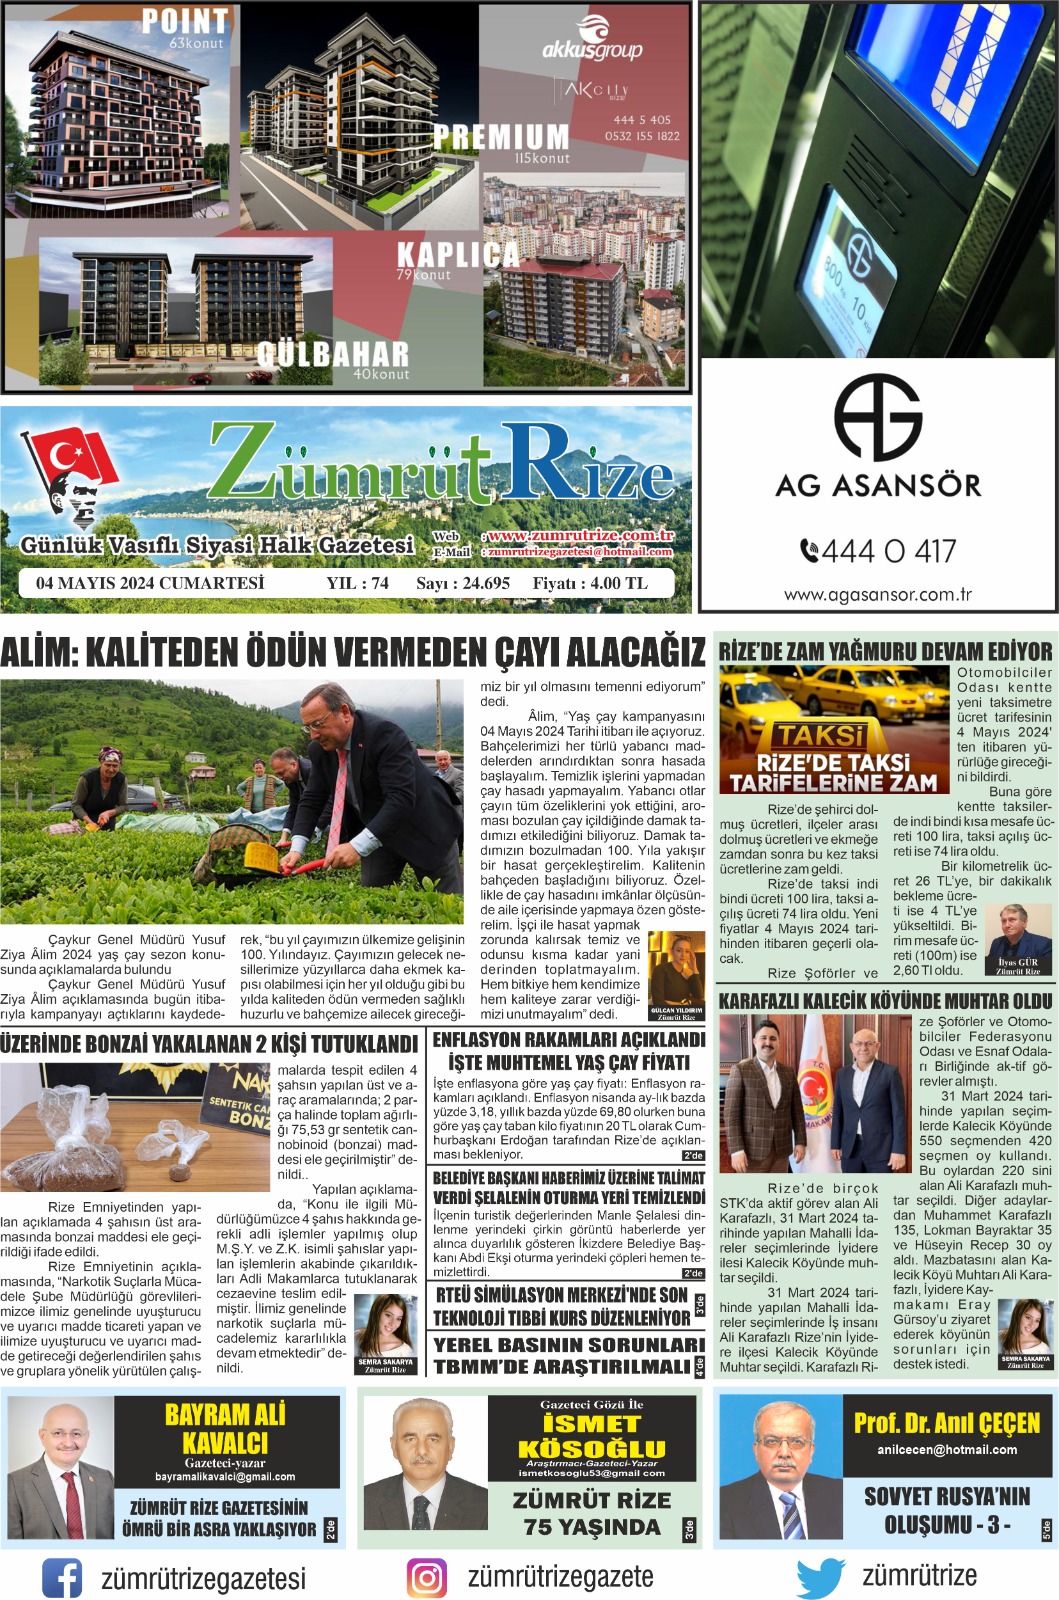 Rize Zümrüt Gazetesi 75. Kuruluş Yılını Kutluyor